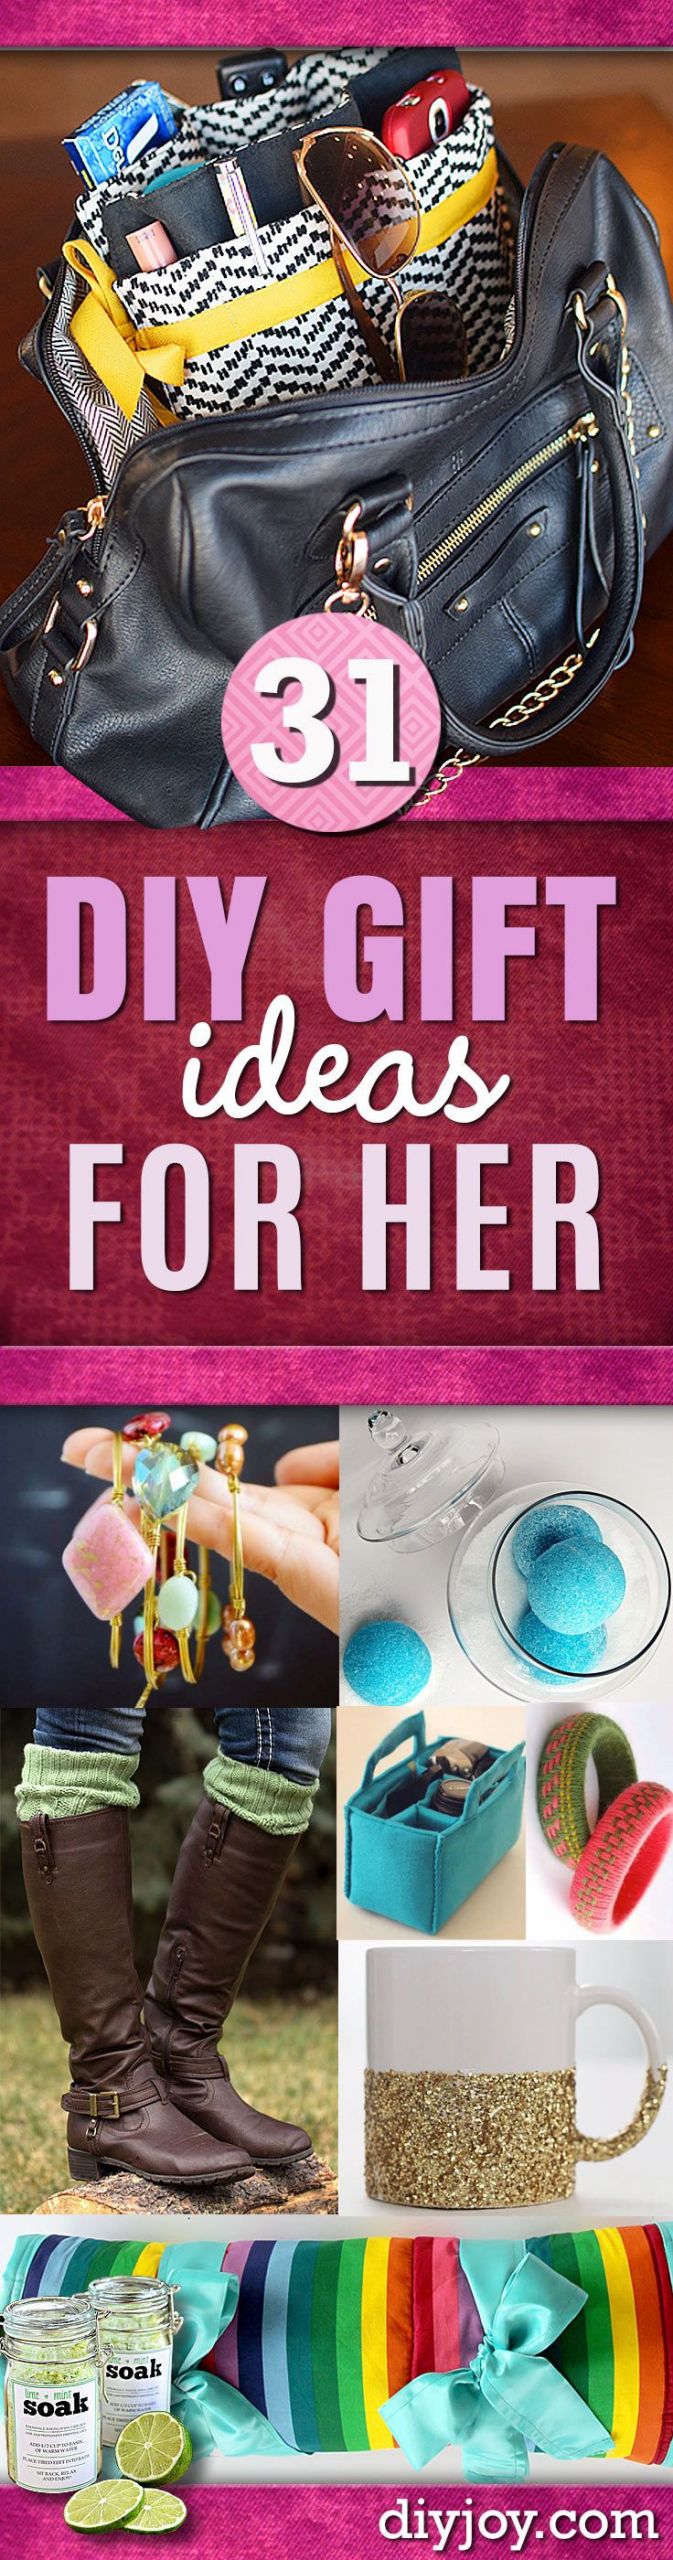 Handmade Gift Ideas For Girlfriend
 DIY Gift Ideas for Her